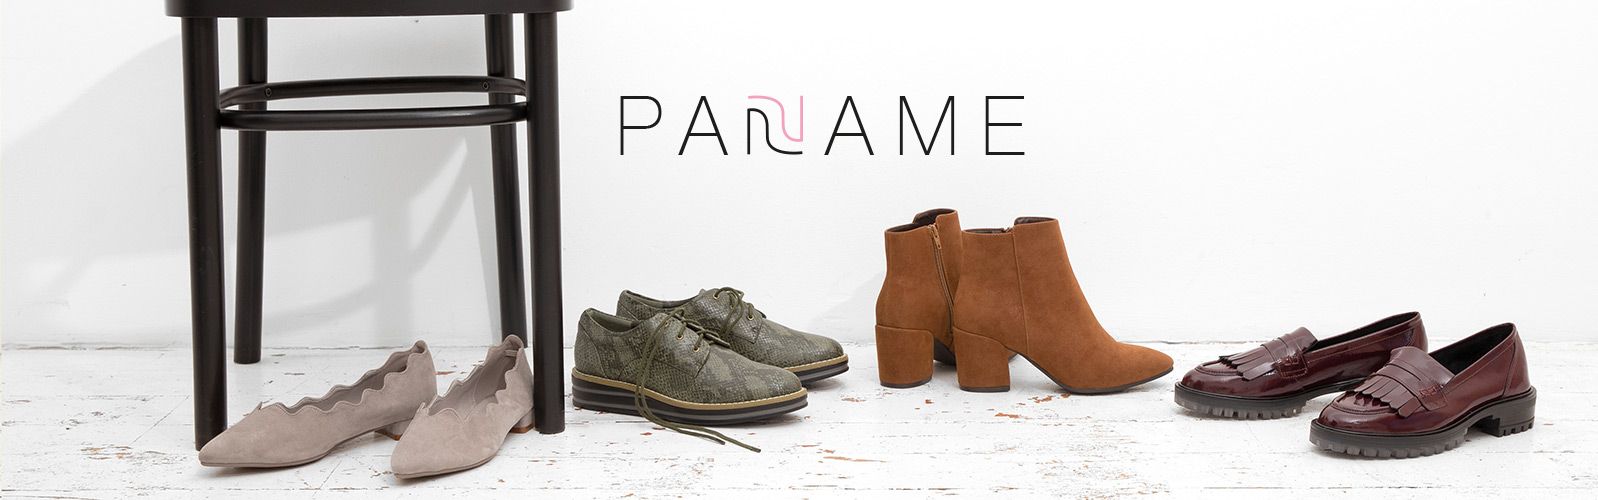 PANAME Schuhe